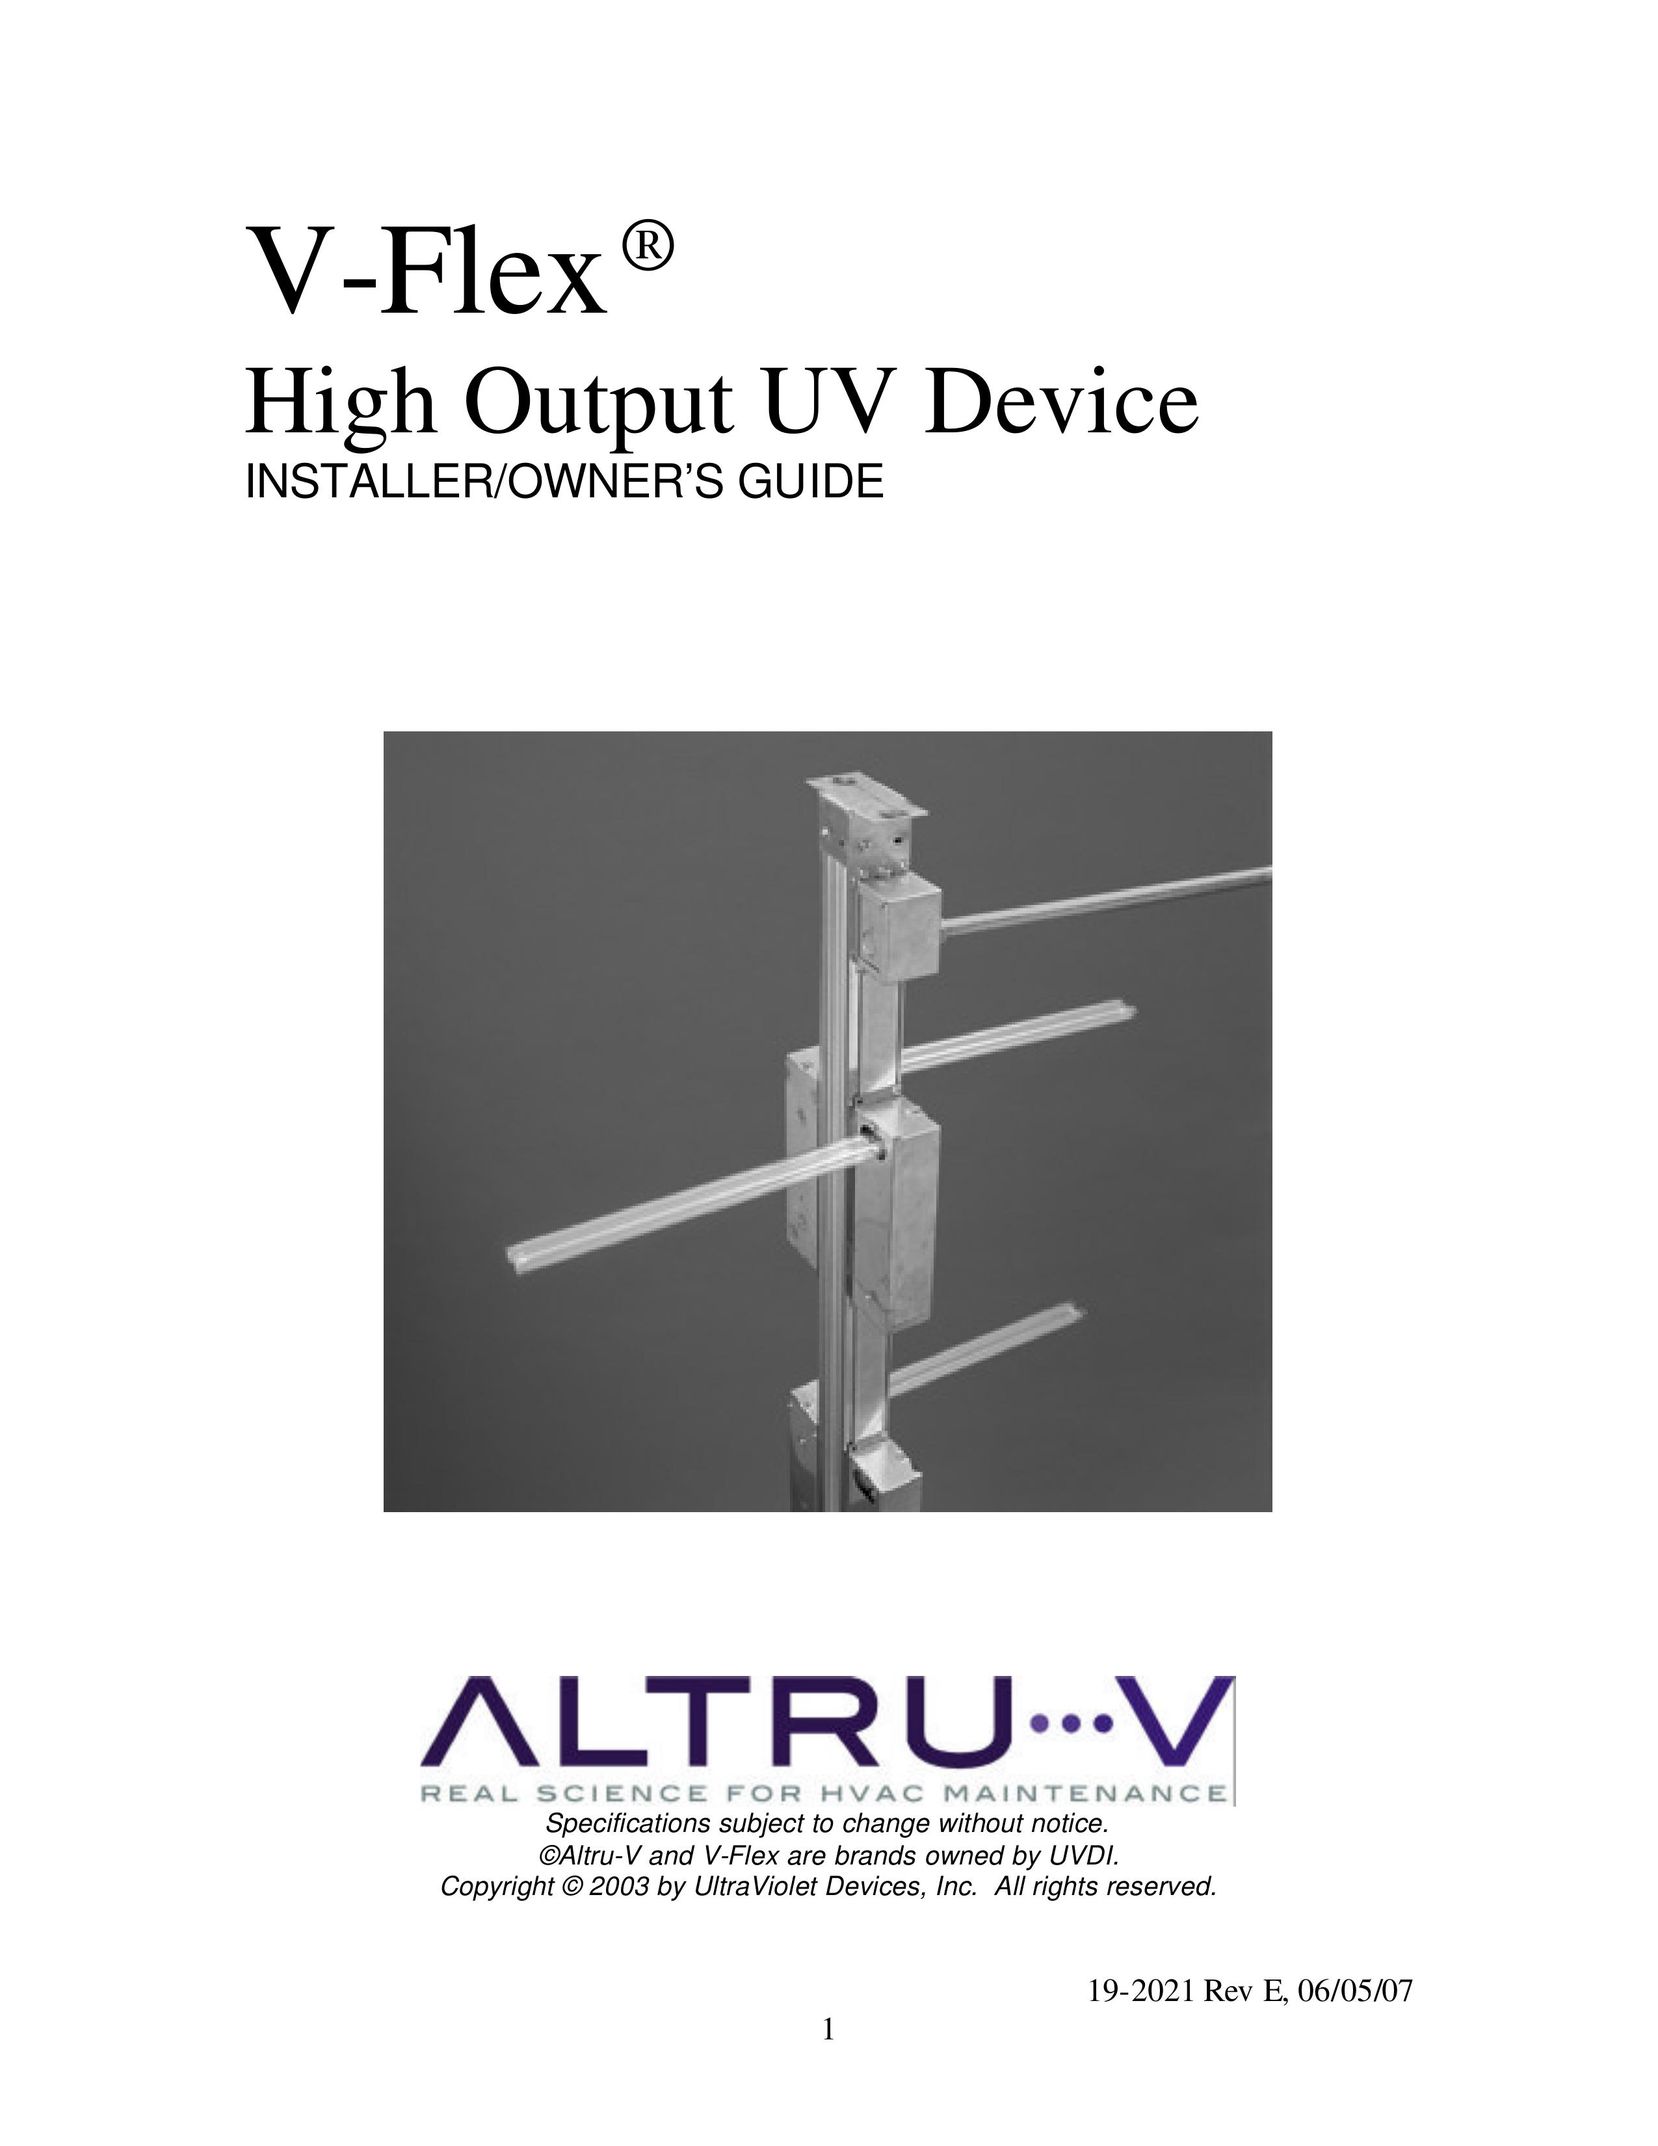 UltraViolet Devices V-Flex Network Card User Manual